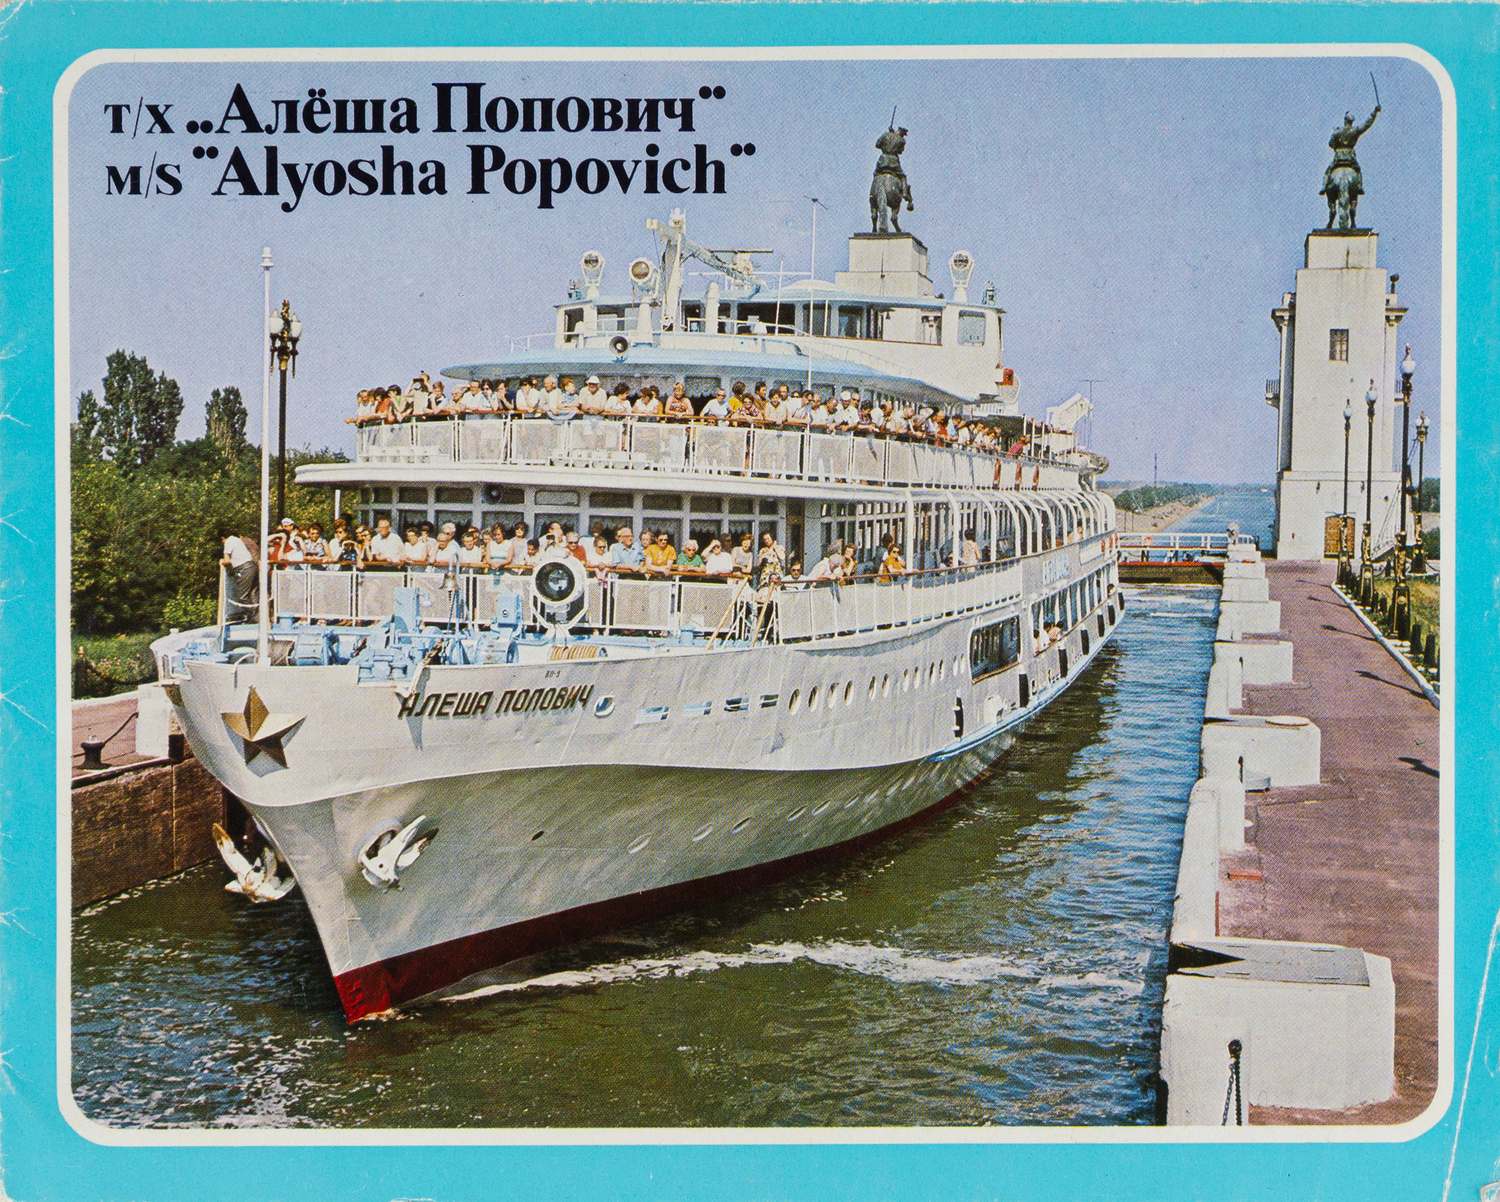 Рекламный буклет теплохода «Алёша Попович». 1970-е годы.